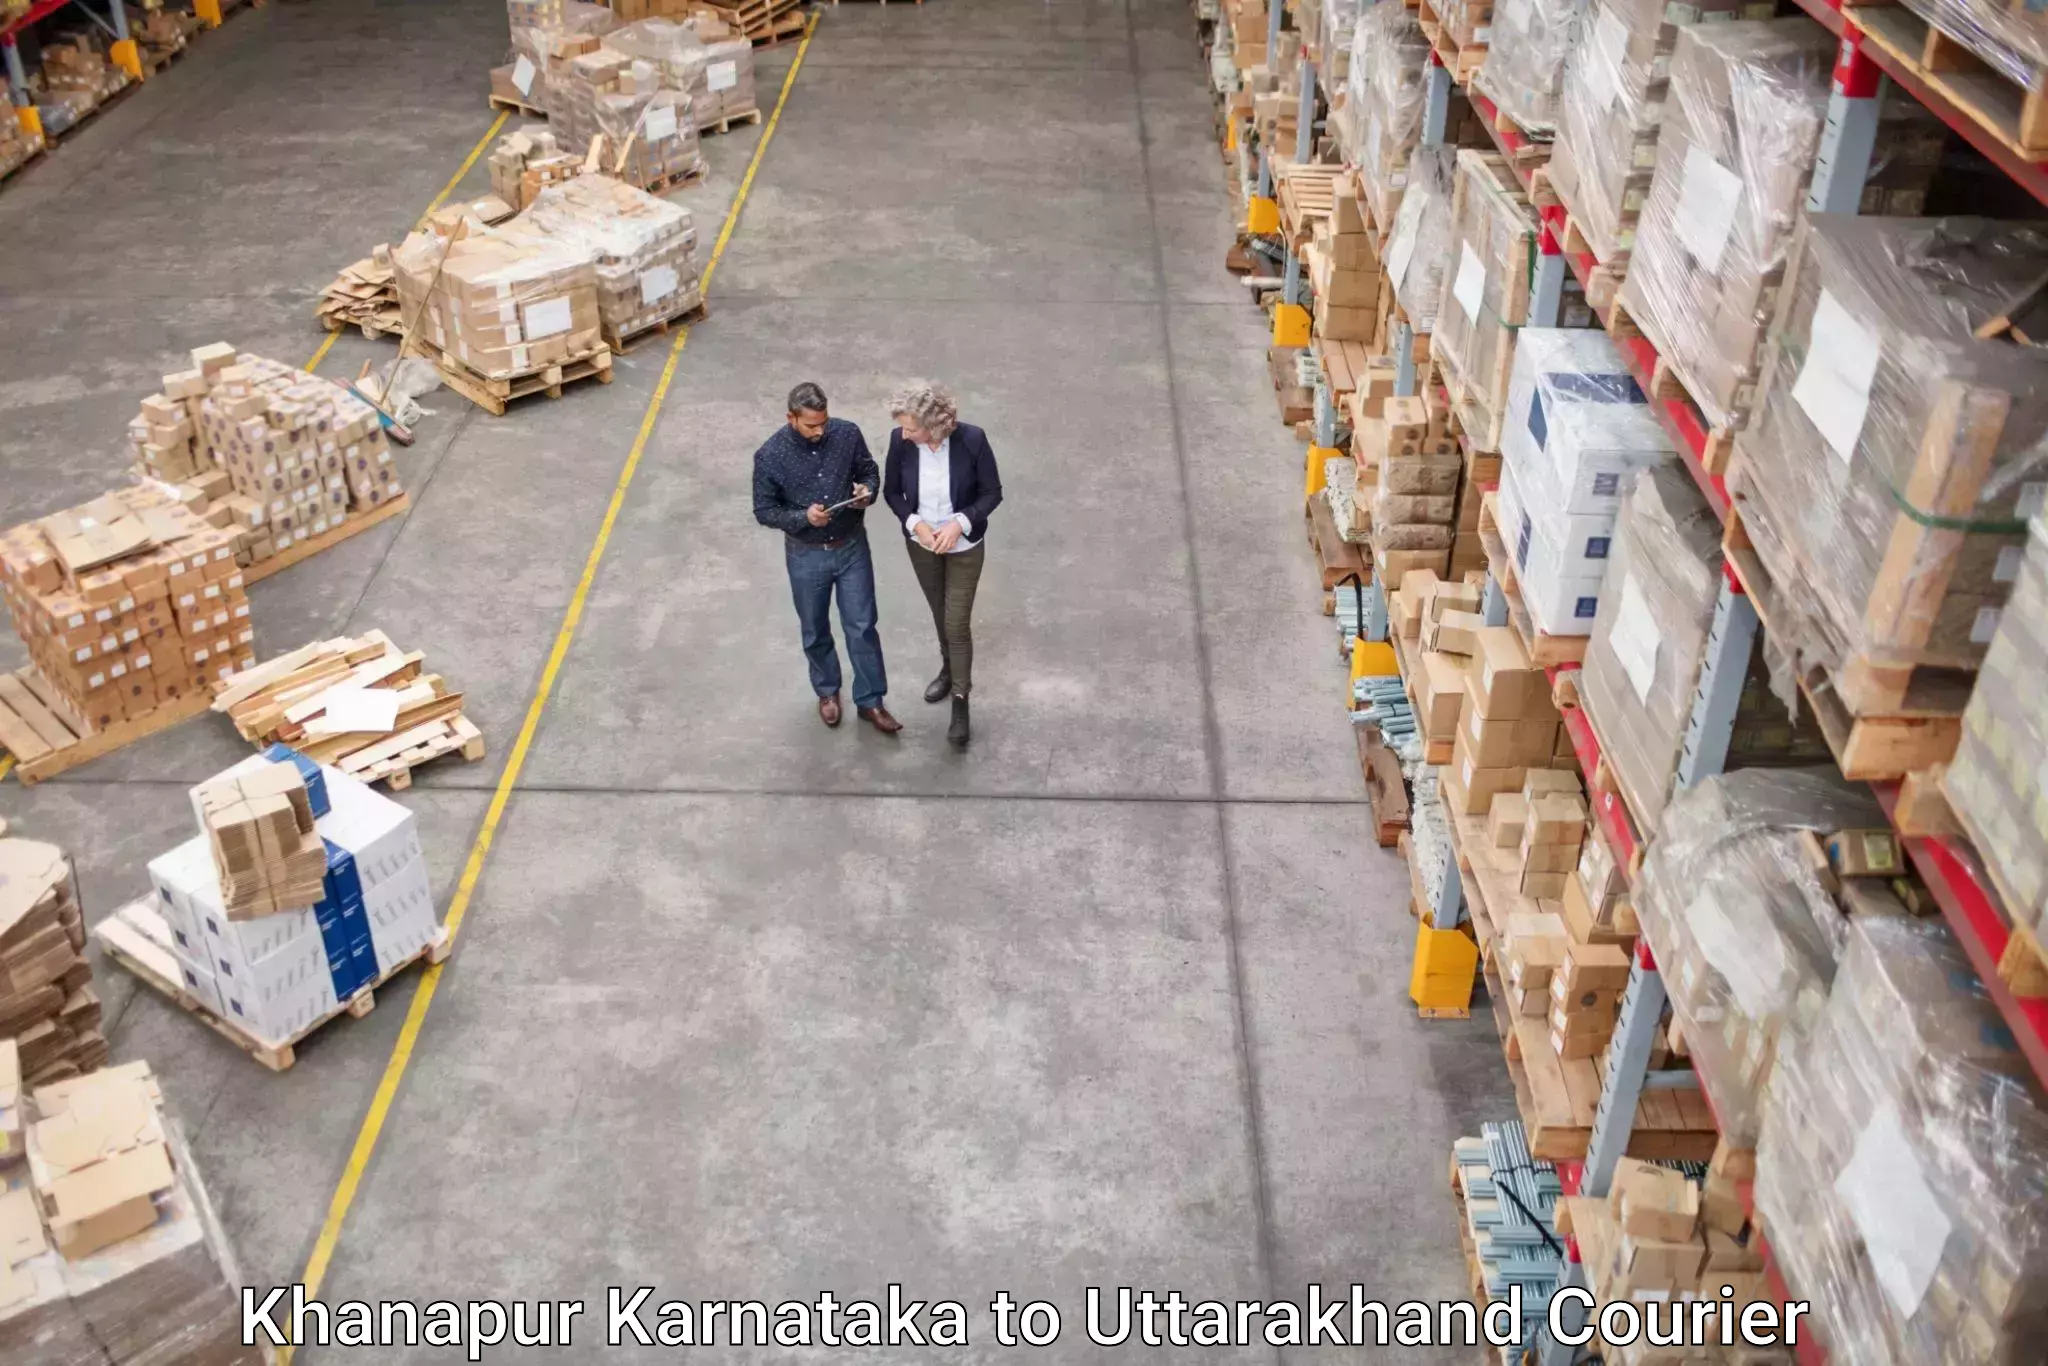 Efficient cargo handling Khanapur Karnataka to Doiwala